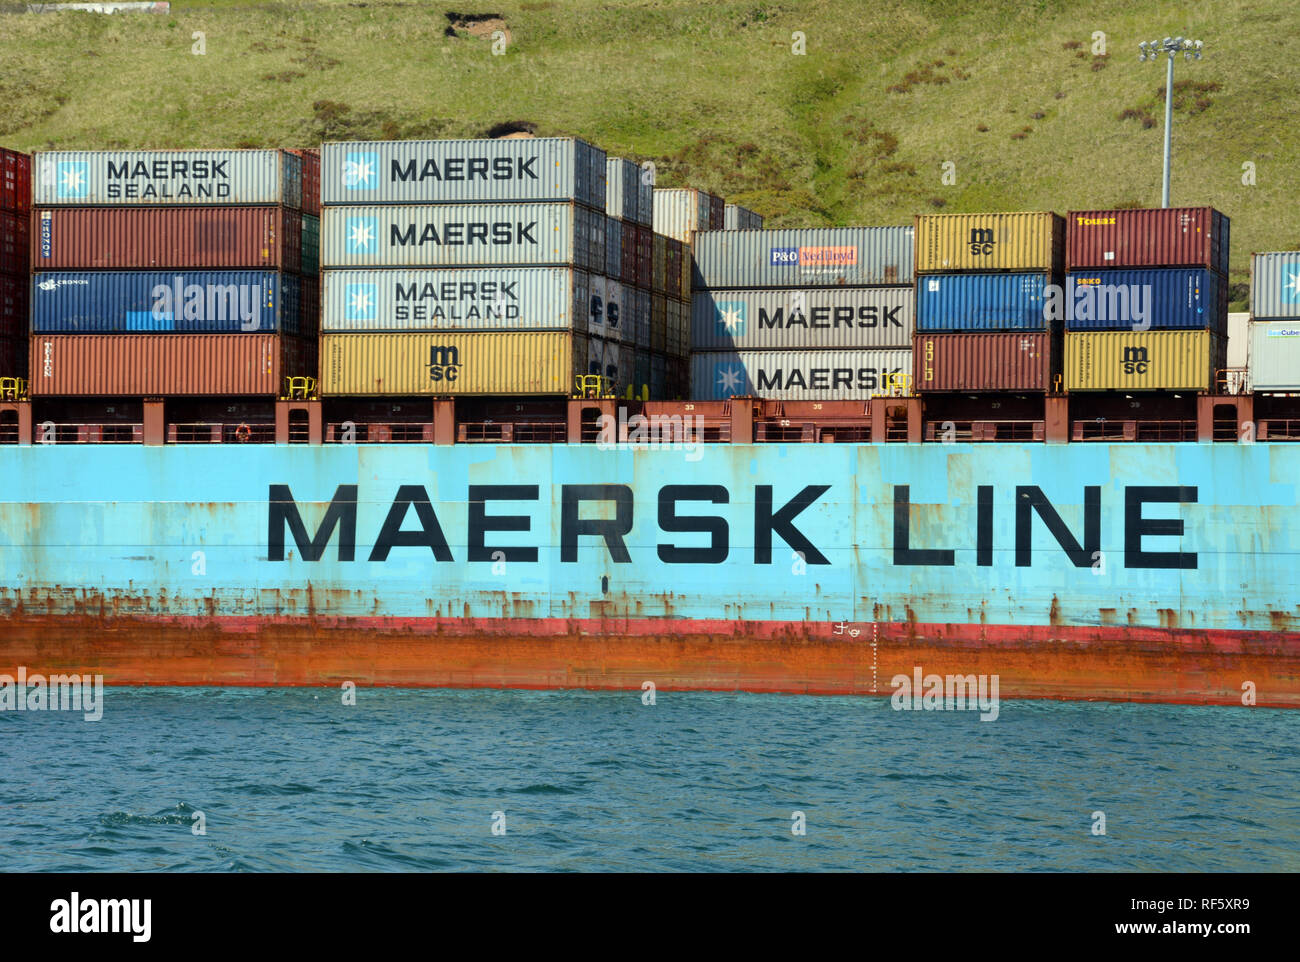 Maersk Line des conteneurs d'expédition de fret maritime sur un navire dans le port de Dutch Harbor, l'île Unalaska, Îles Aléoutiennes, Alaska, United States. Banque D'Images